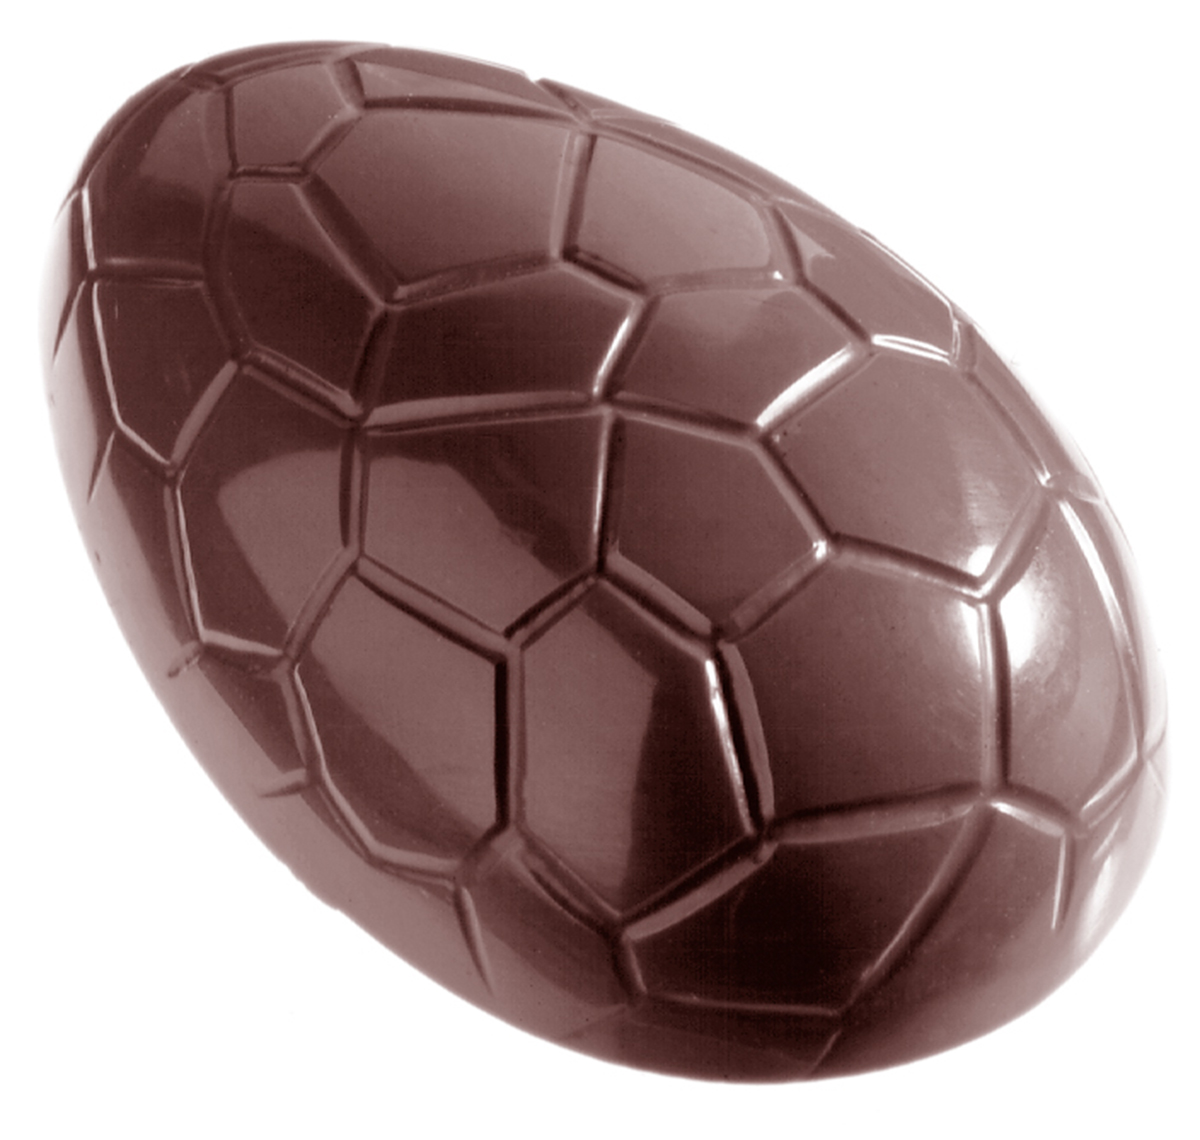 Se Professionel chokoladeform i polycarbonat - Egg kroko 8 cm CW2205 hos BageTid.dk